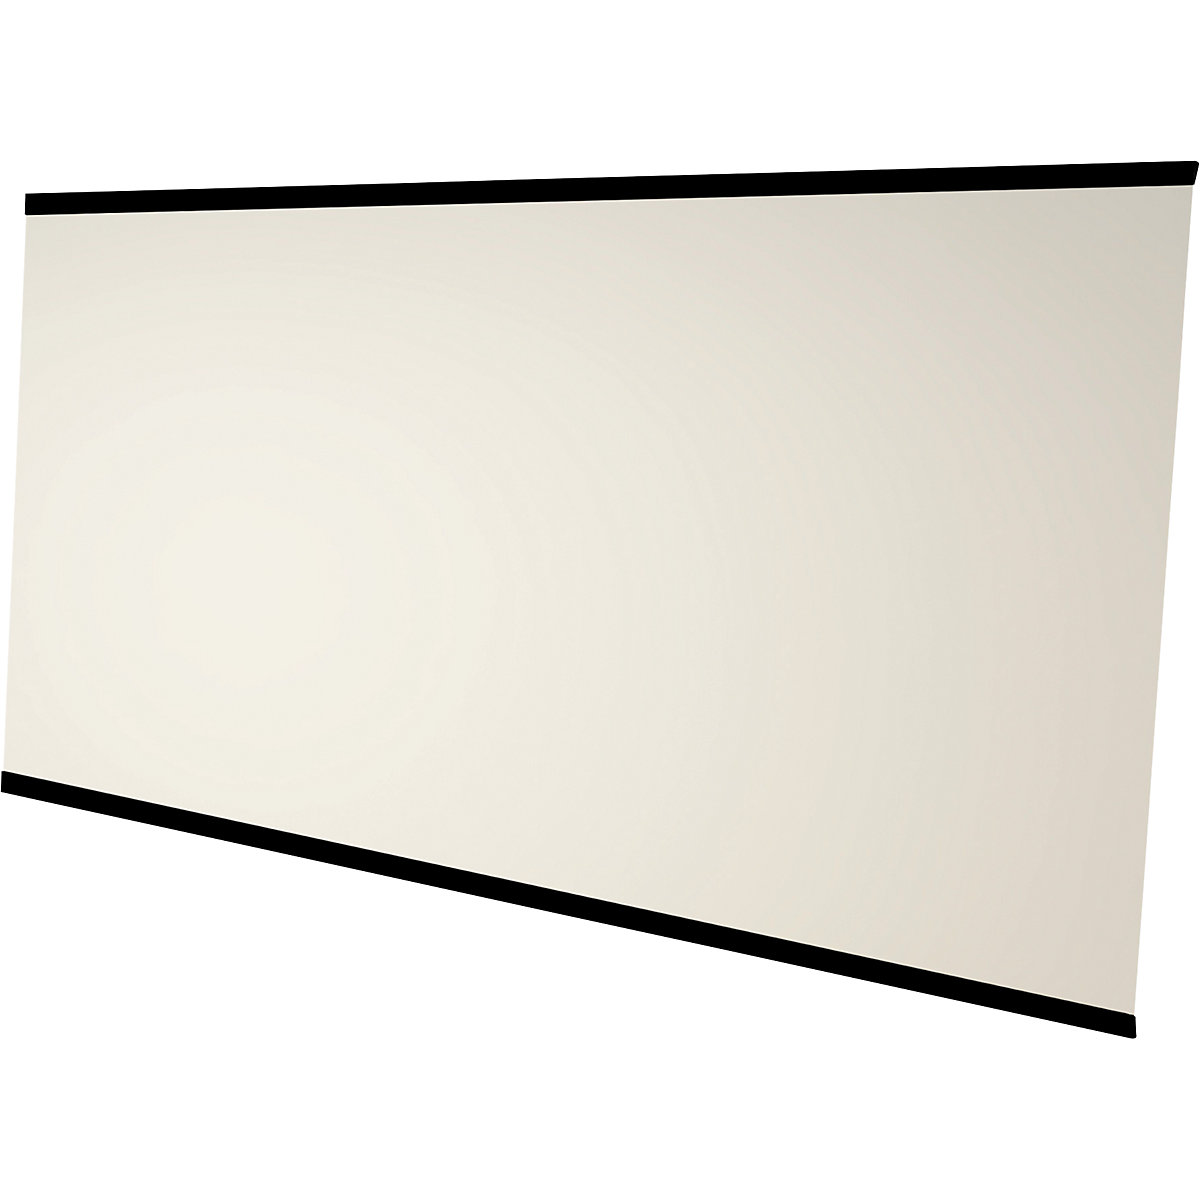 LEAN WALL whiteboard, frameless – Chameleon, enamelled, white, WxH 3920 x 2216 mm, 4 panels-7